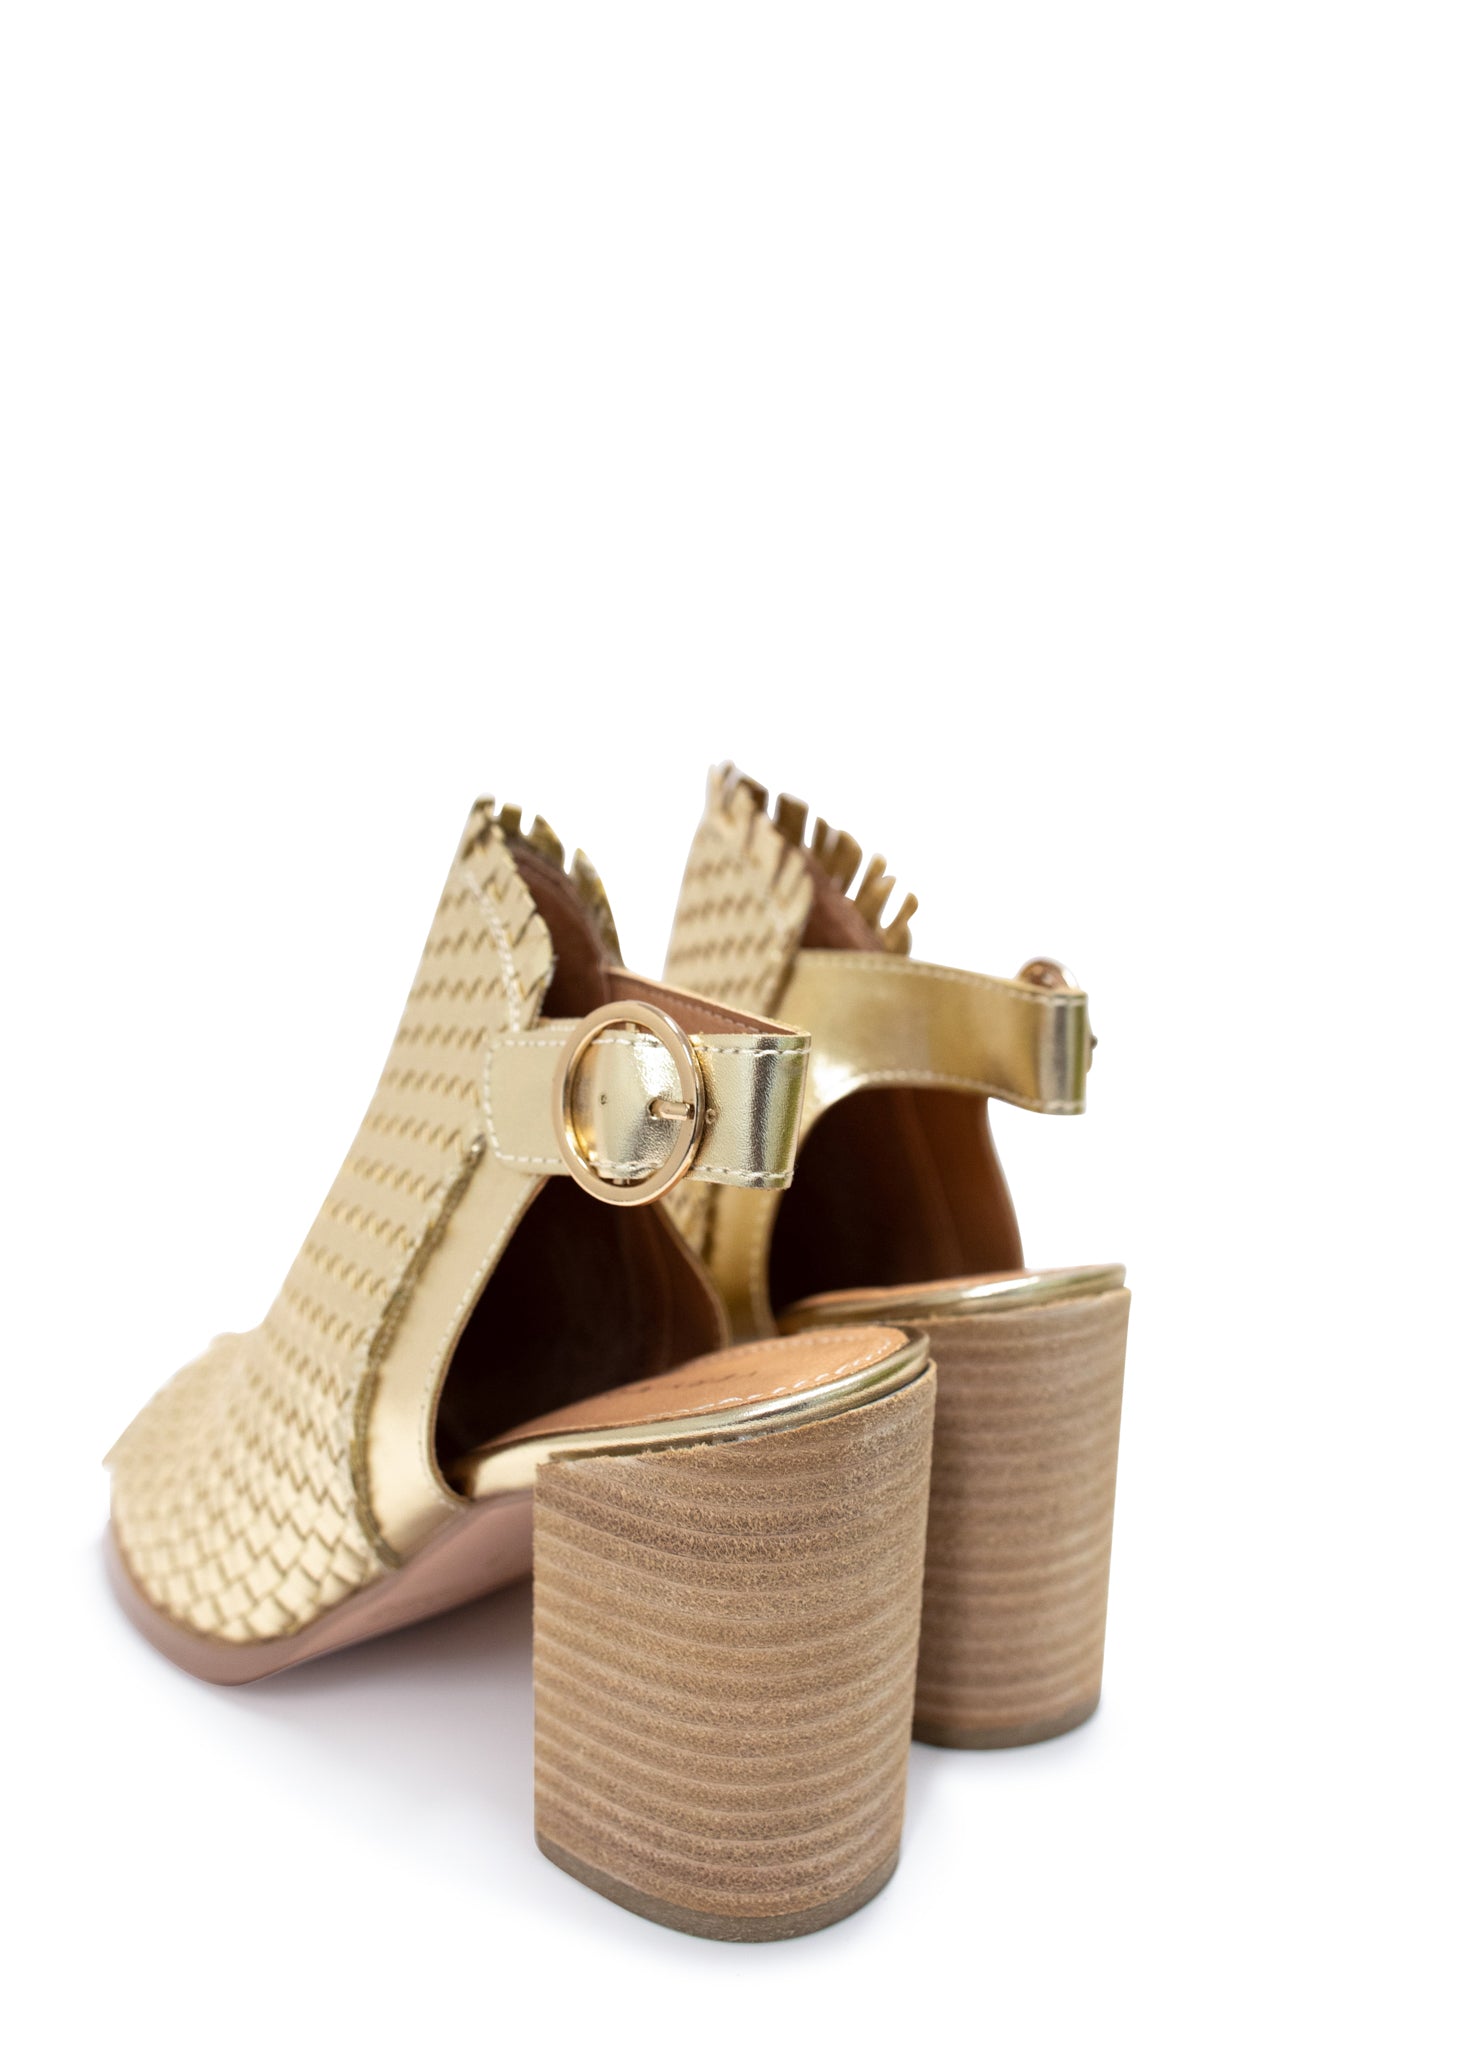 Starla Heeled Sandal in Metallic Gold